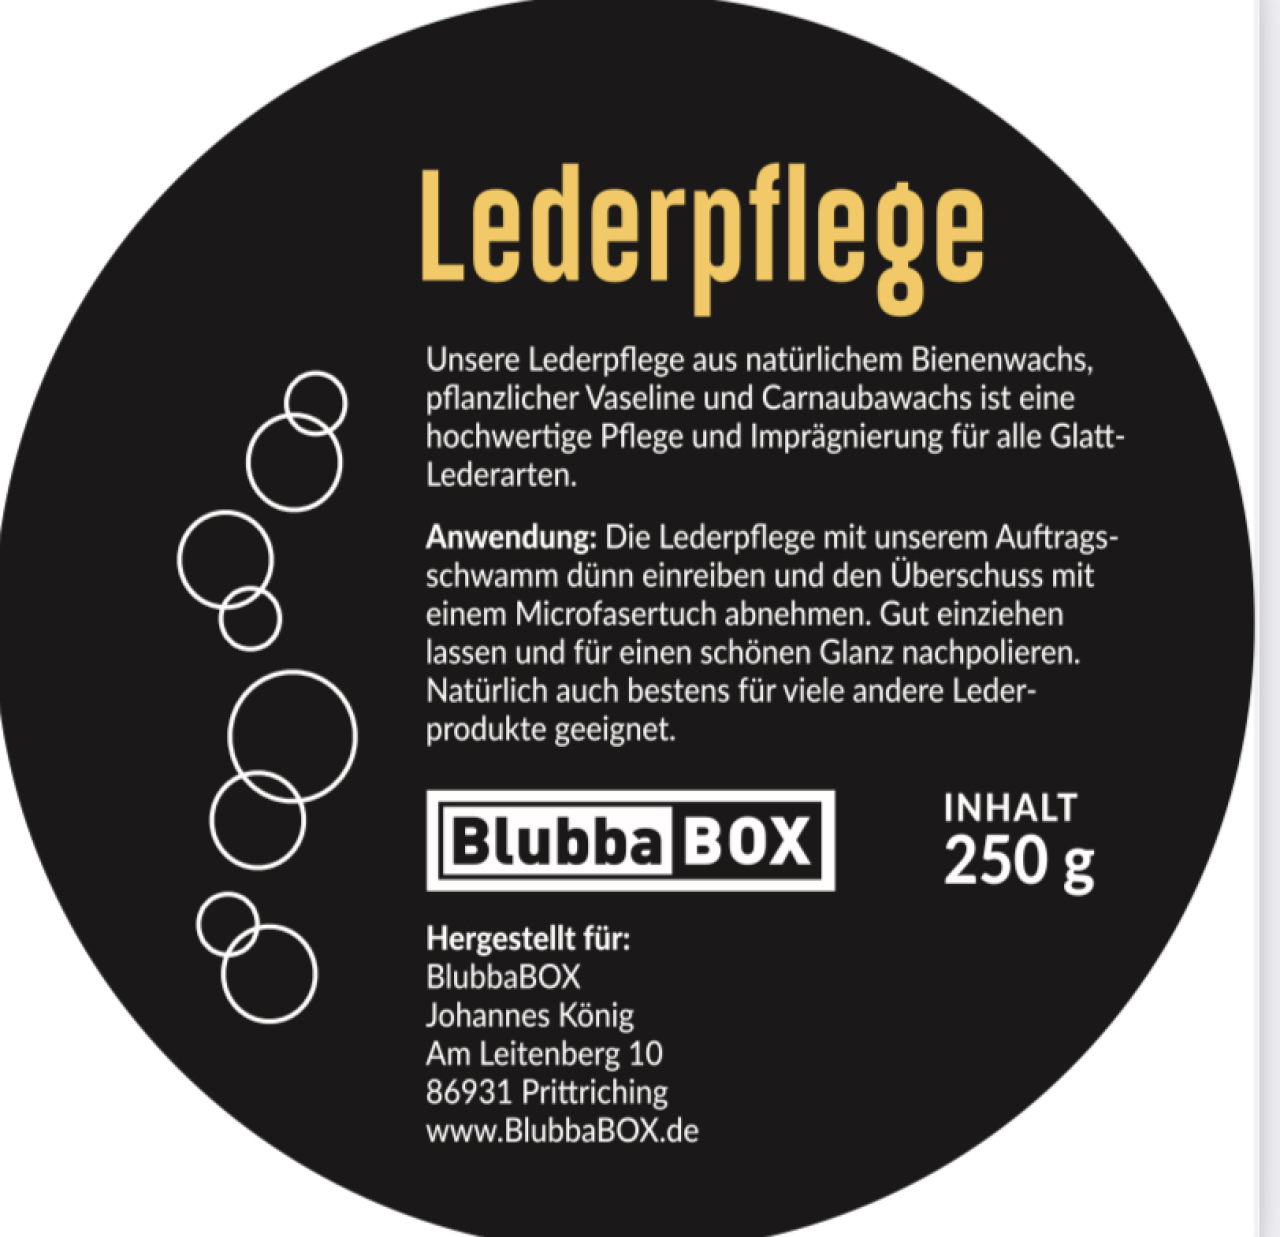 BlubbaBOX Lederpflege aus Bienenwachs